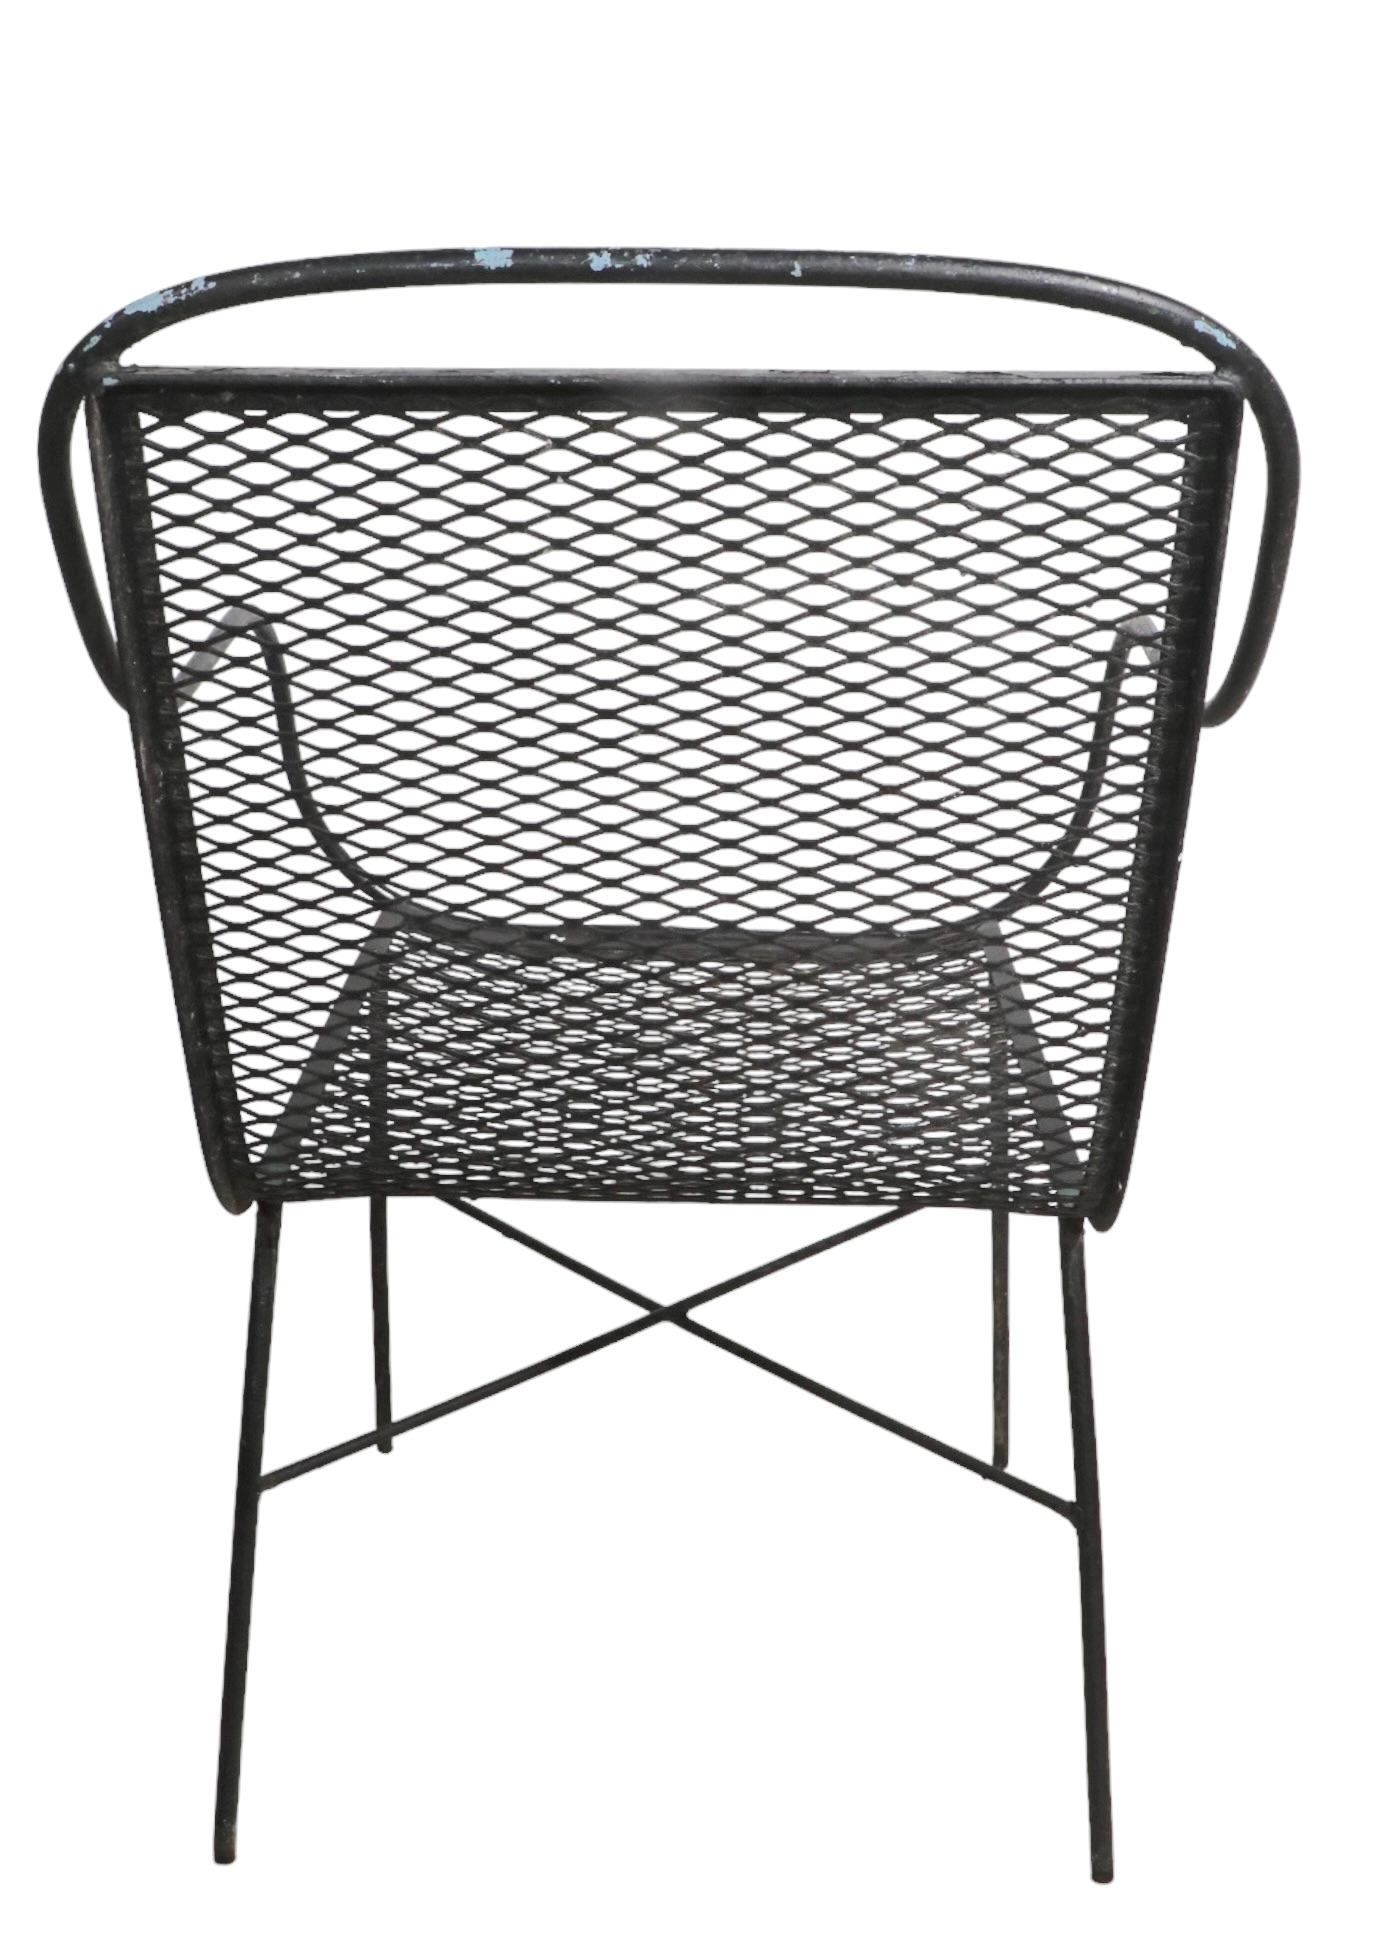 Schicker architektonischer Armlehnstuhl aus Schmiedeeisen mit Sitz und Rückenlehne aus Metallgeflecht. Der Stuhl ist in sehr gutem, originalem Zustand, sauber und einsatzbereit. 
 Gesamt H 31,5 x Arm H 24,5 x Sitz H 17 x B 21,5 x T 20 Zoll. 
